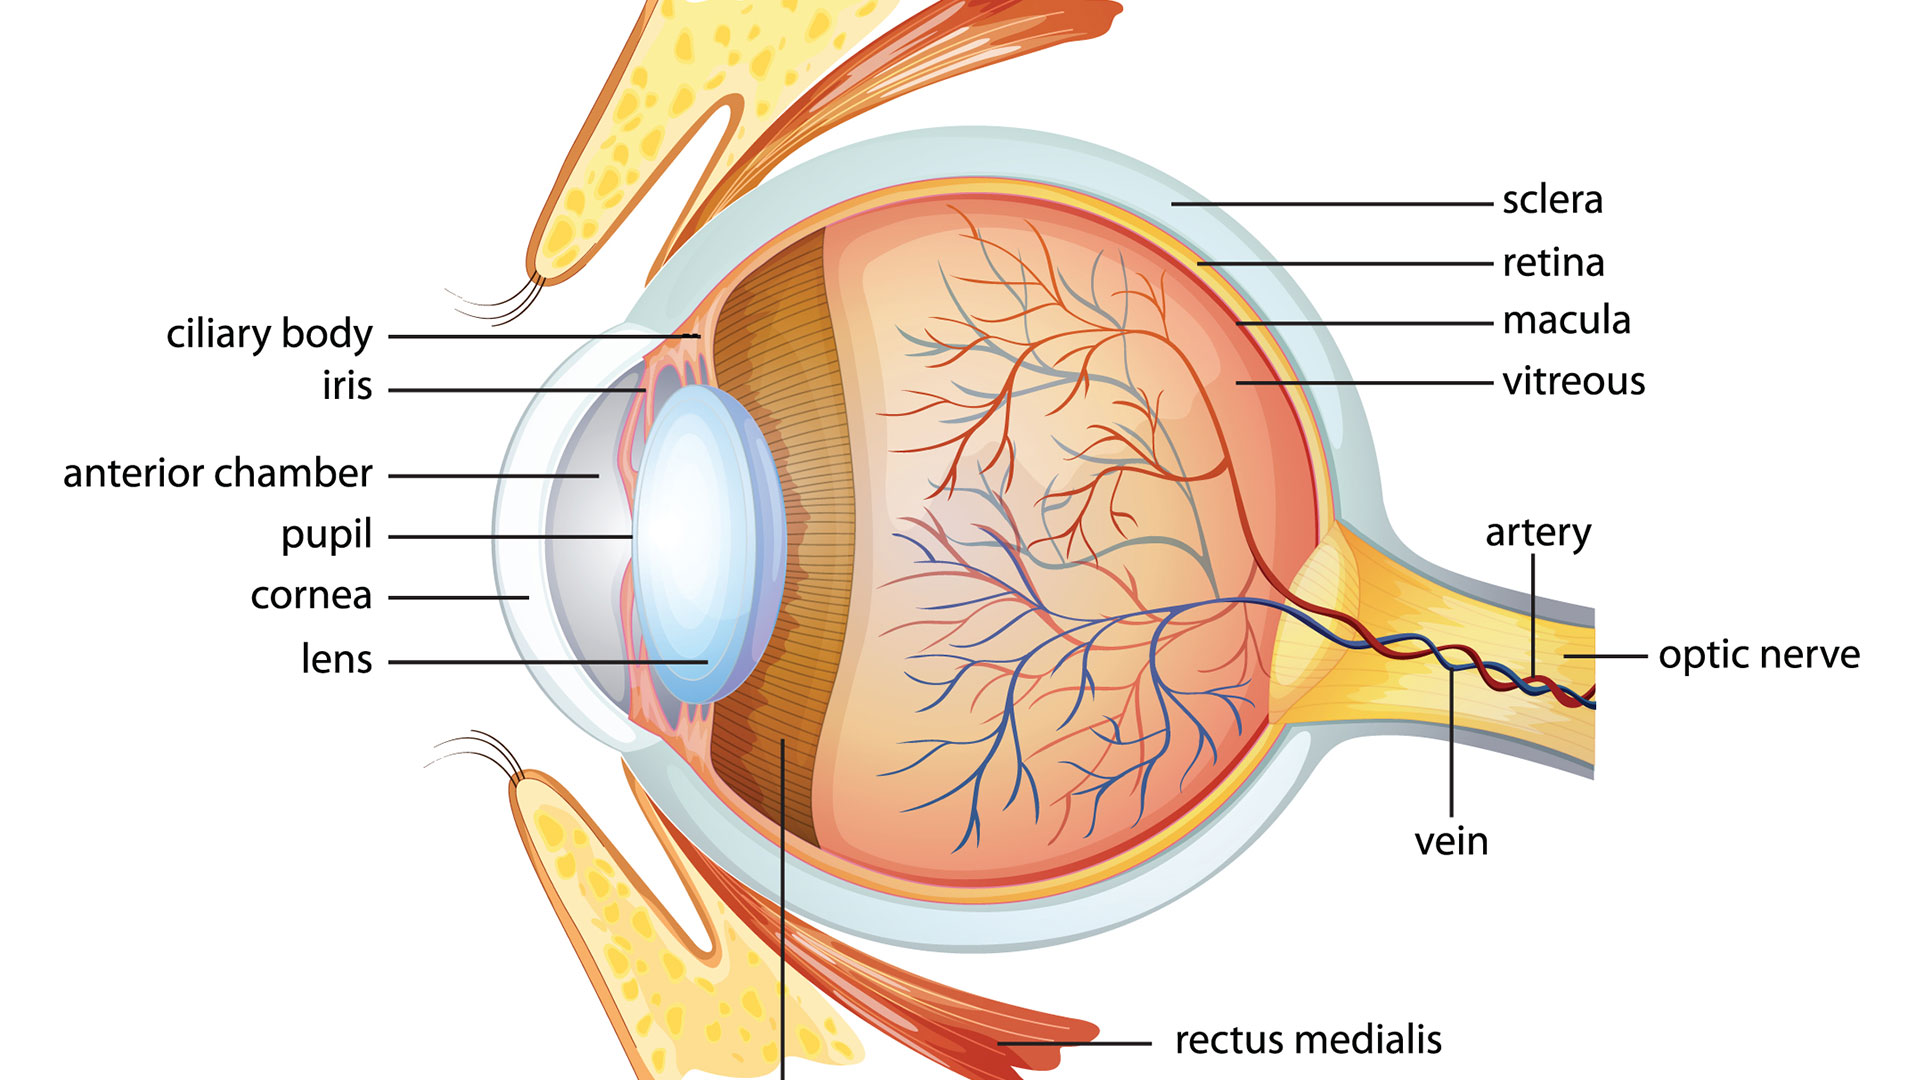 ¿Qué parte del ojo crece durante toda la vida?